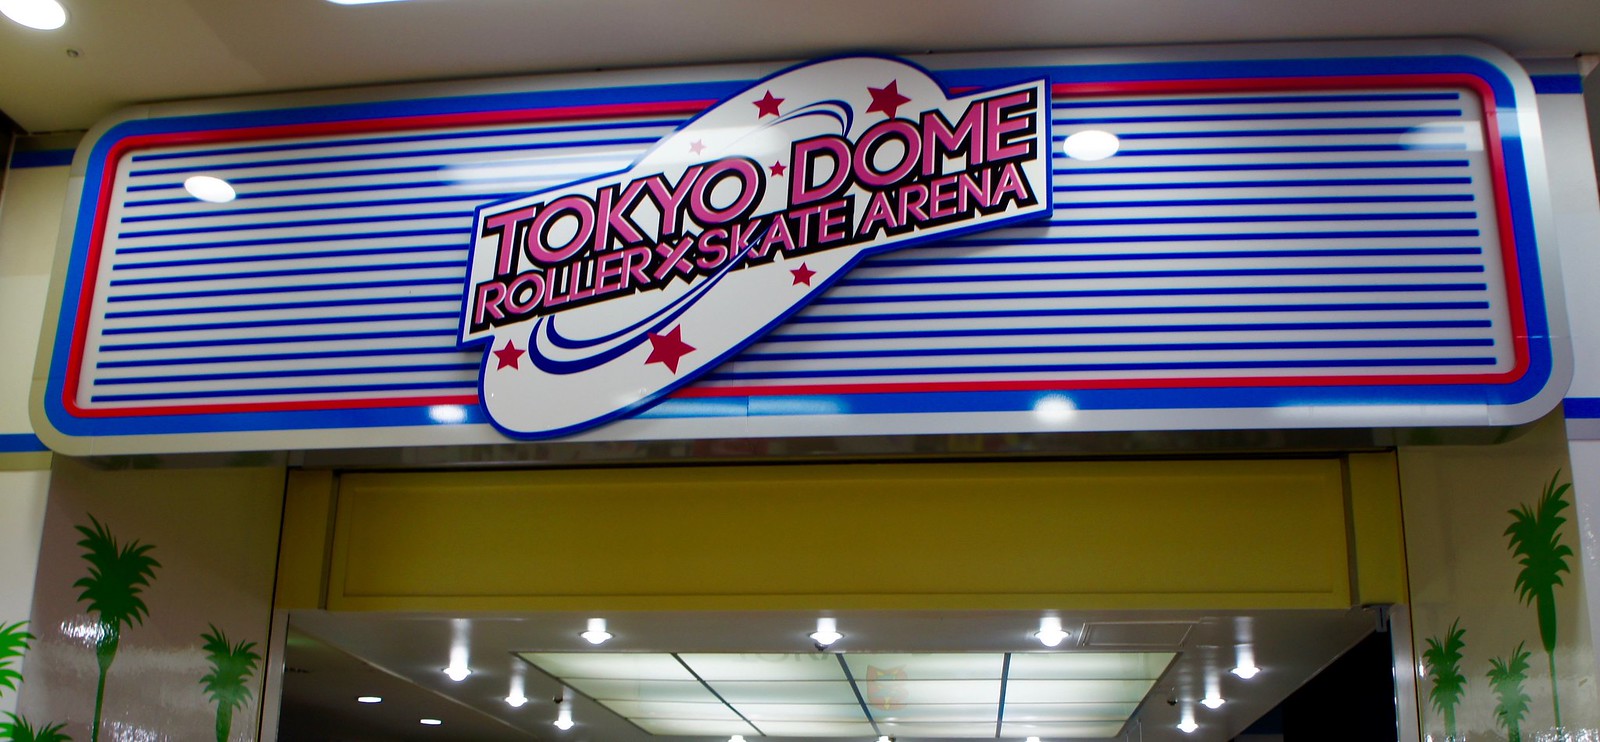 Tokyo Dome Skate Arena